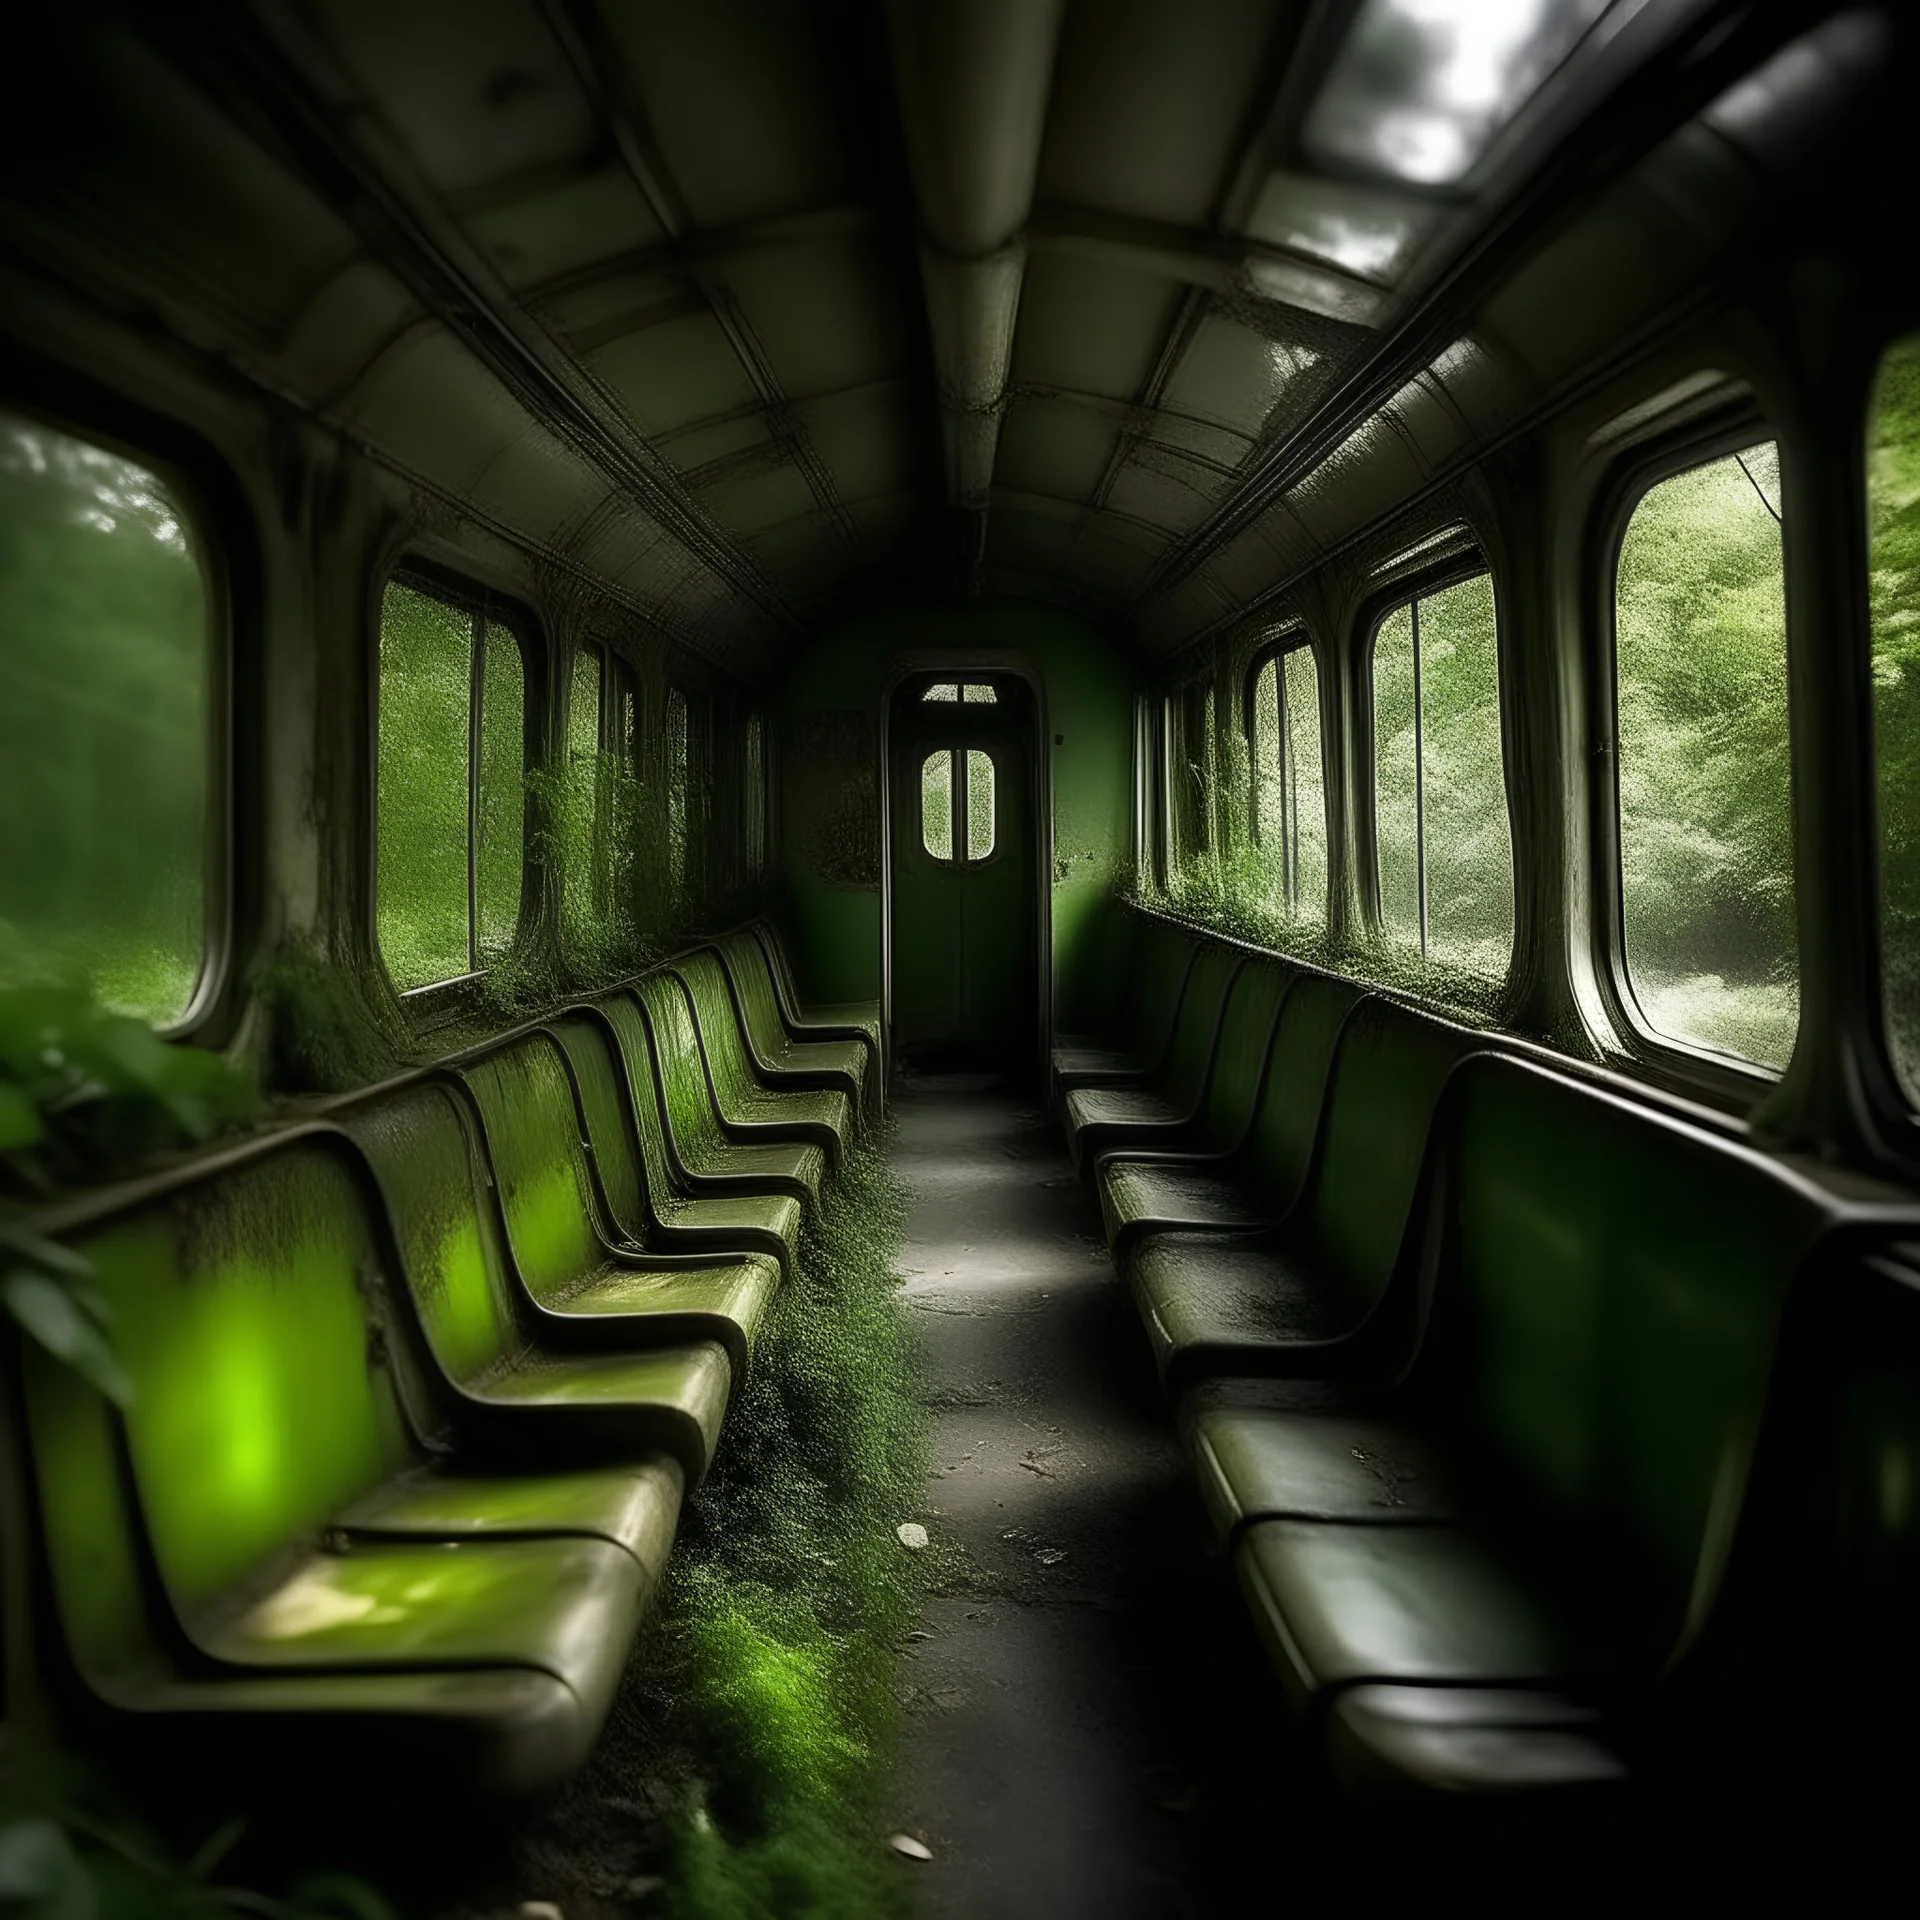 Wagon de métro de paris, sieges usés, désaffecté, jungle